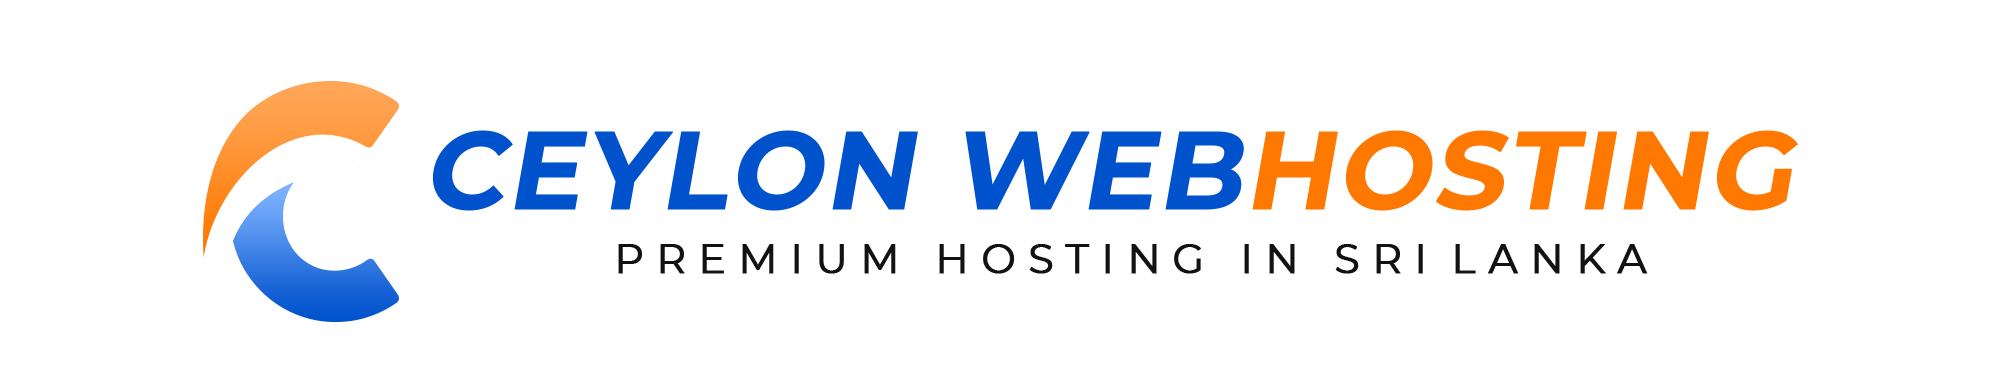 Ceylon Web Hosting